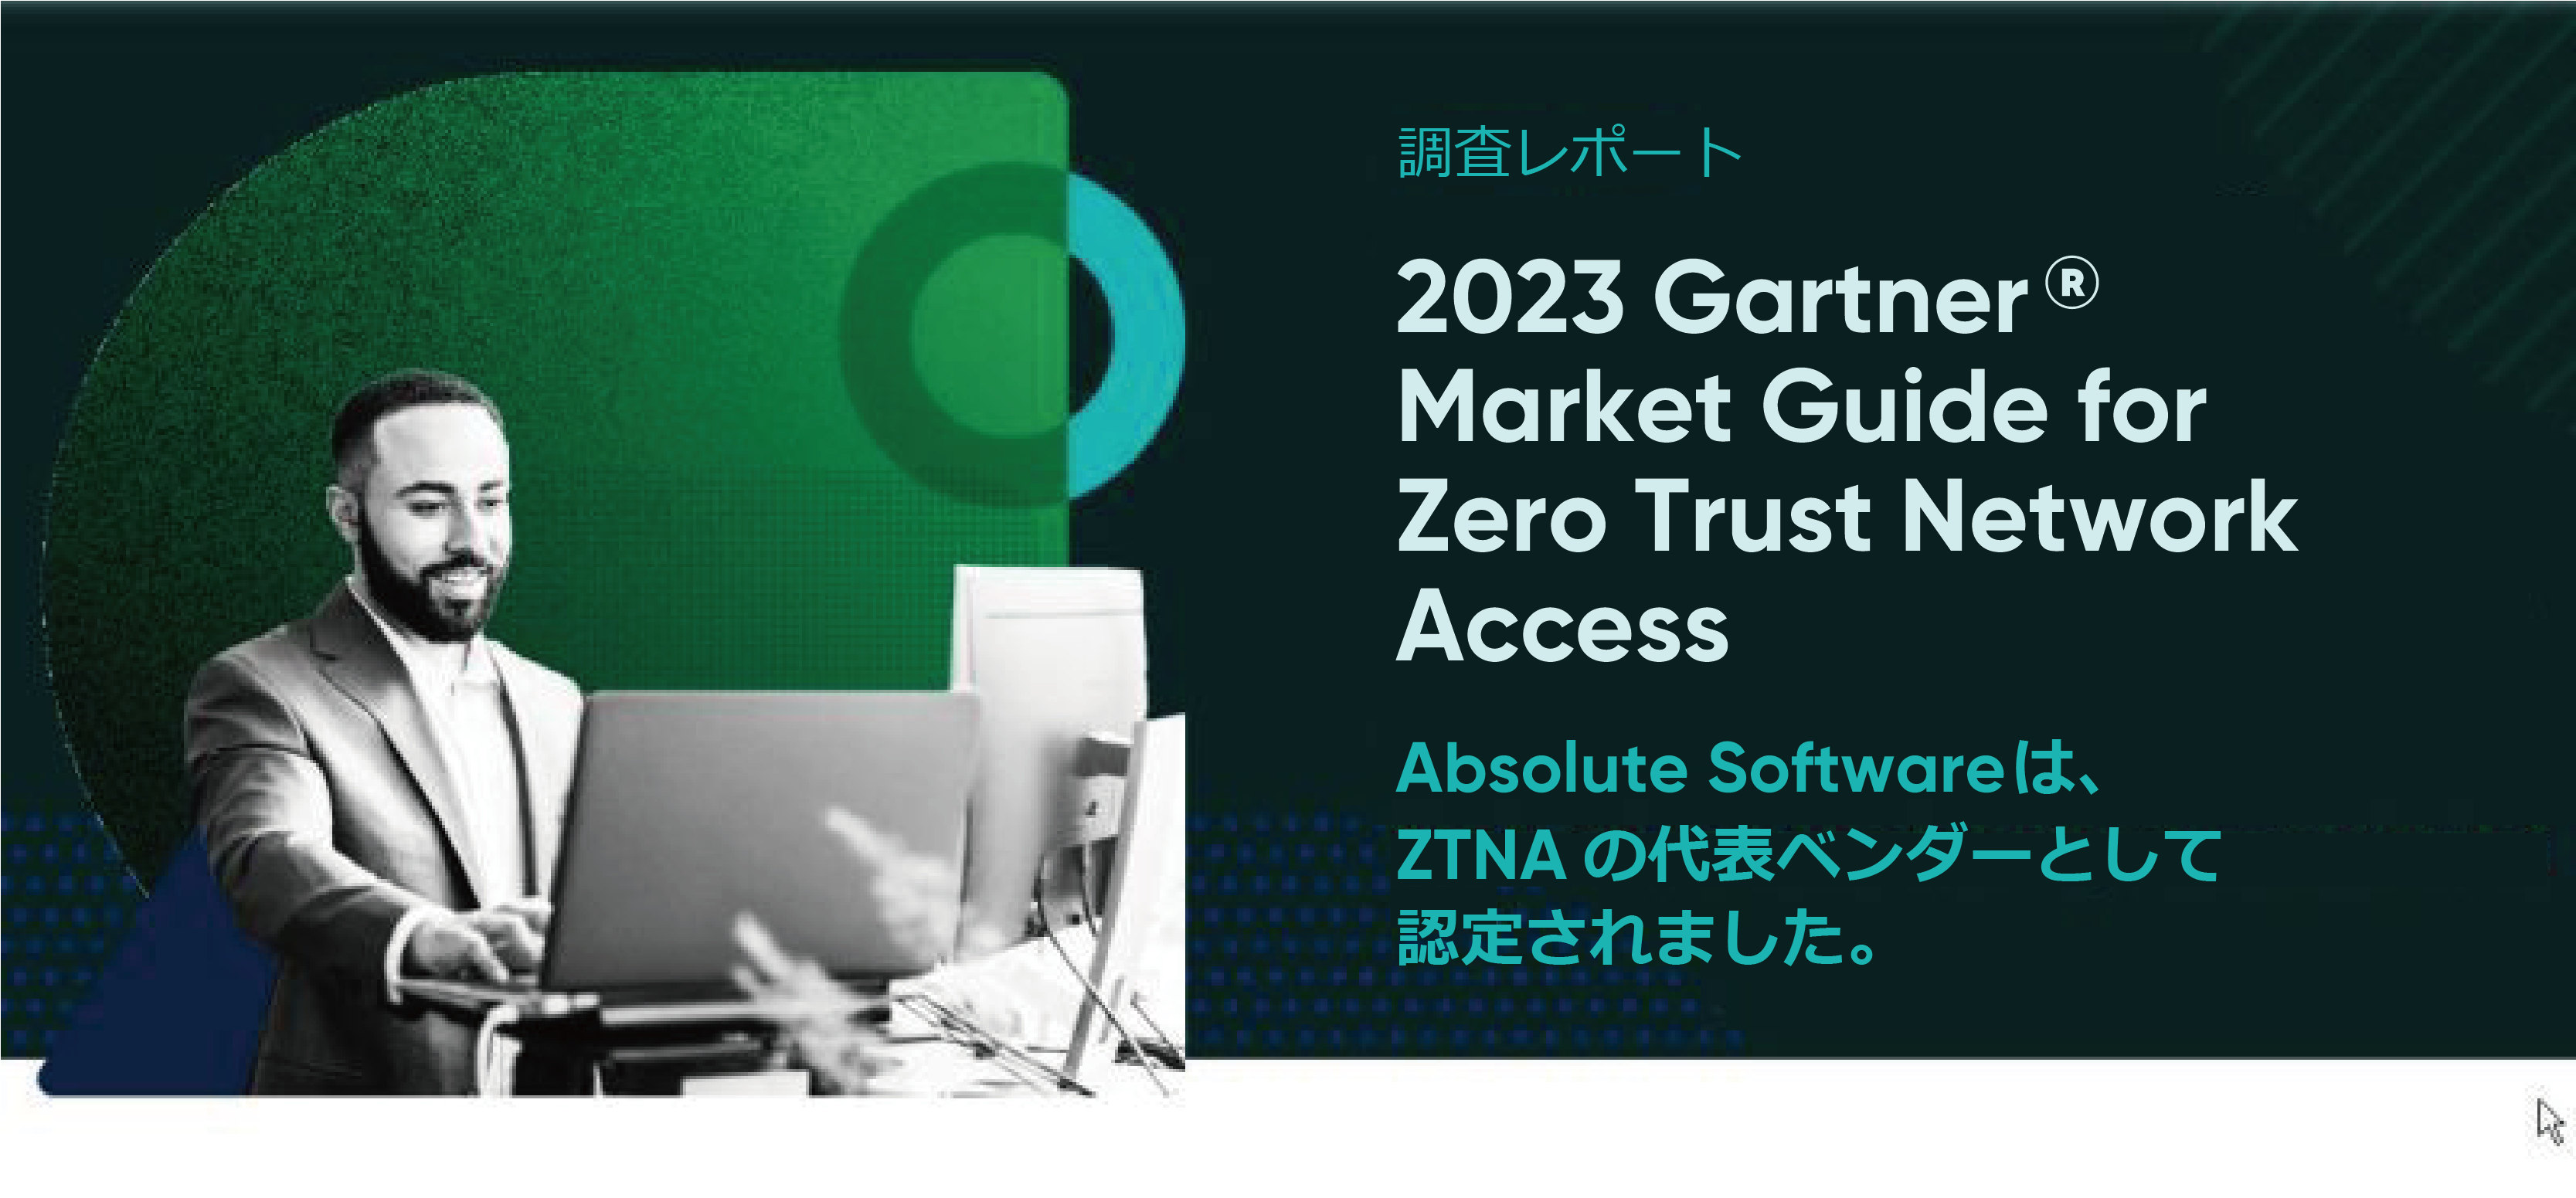 Absolute SoftwareAu2023 Gartner Market Guide for Zero Trust Network Access (ZTNA)vɂāA\Ix_[Ƃĕ]